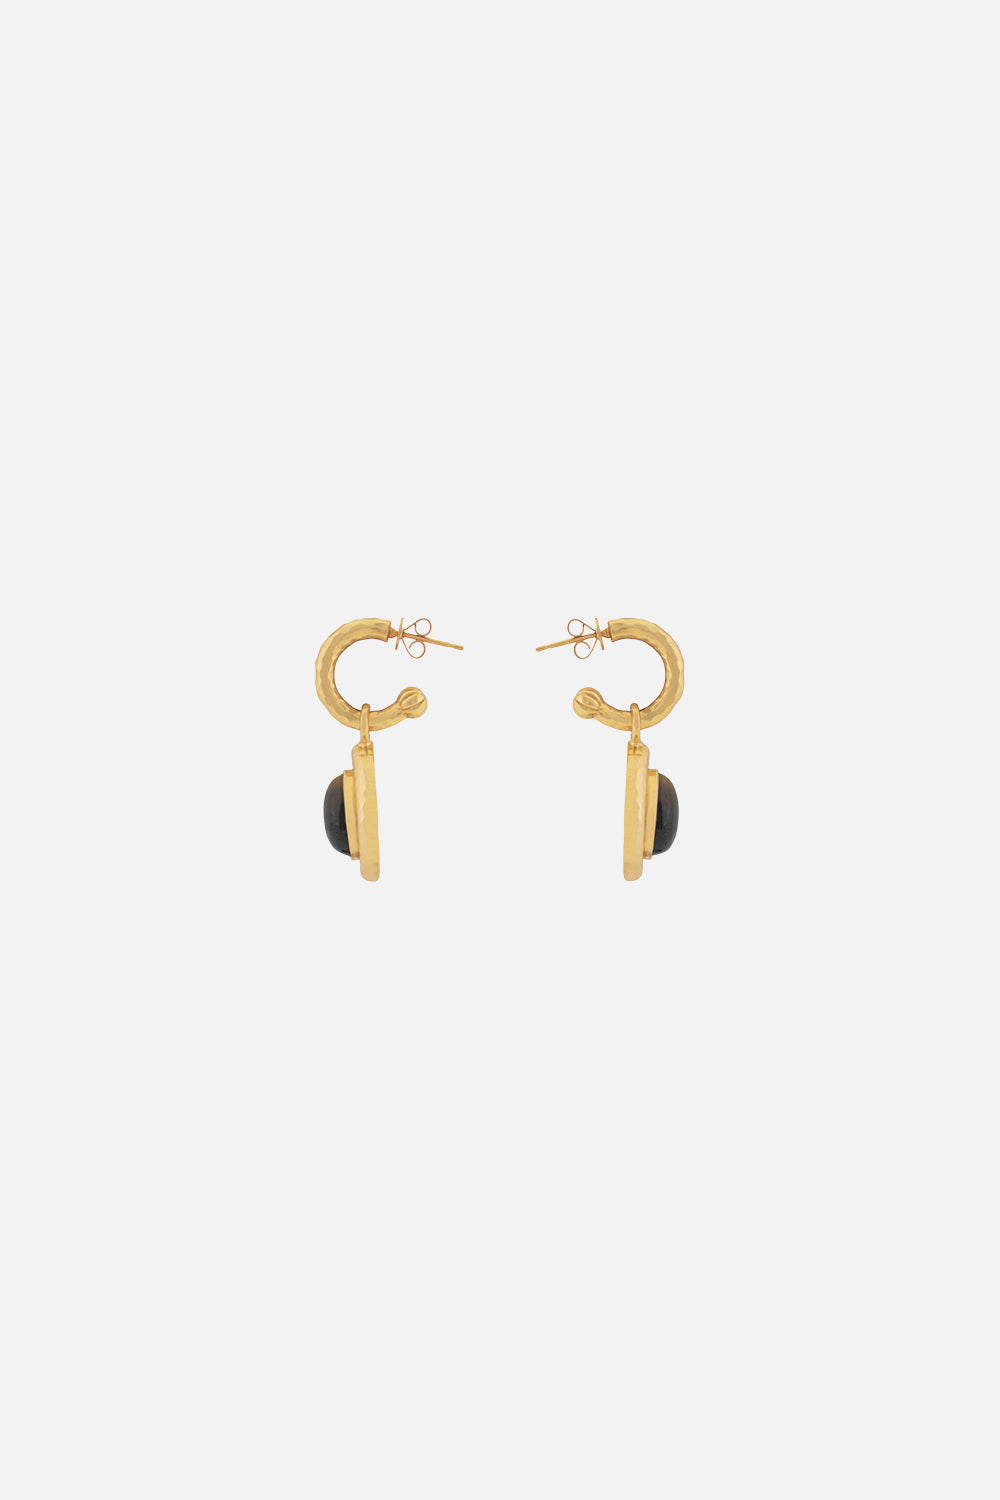 CAMILLA jewellery tigers eye earrings 